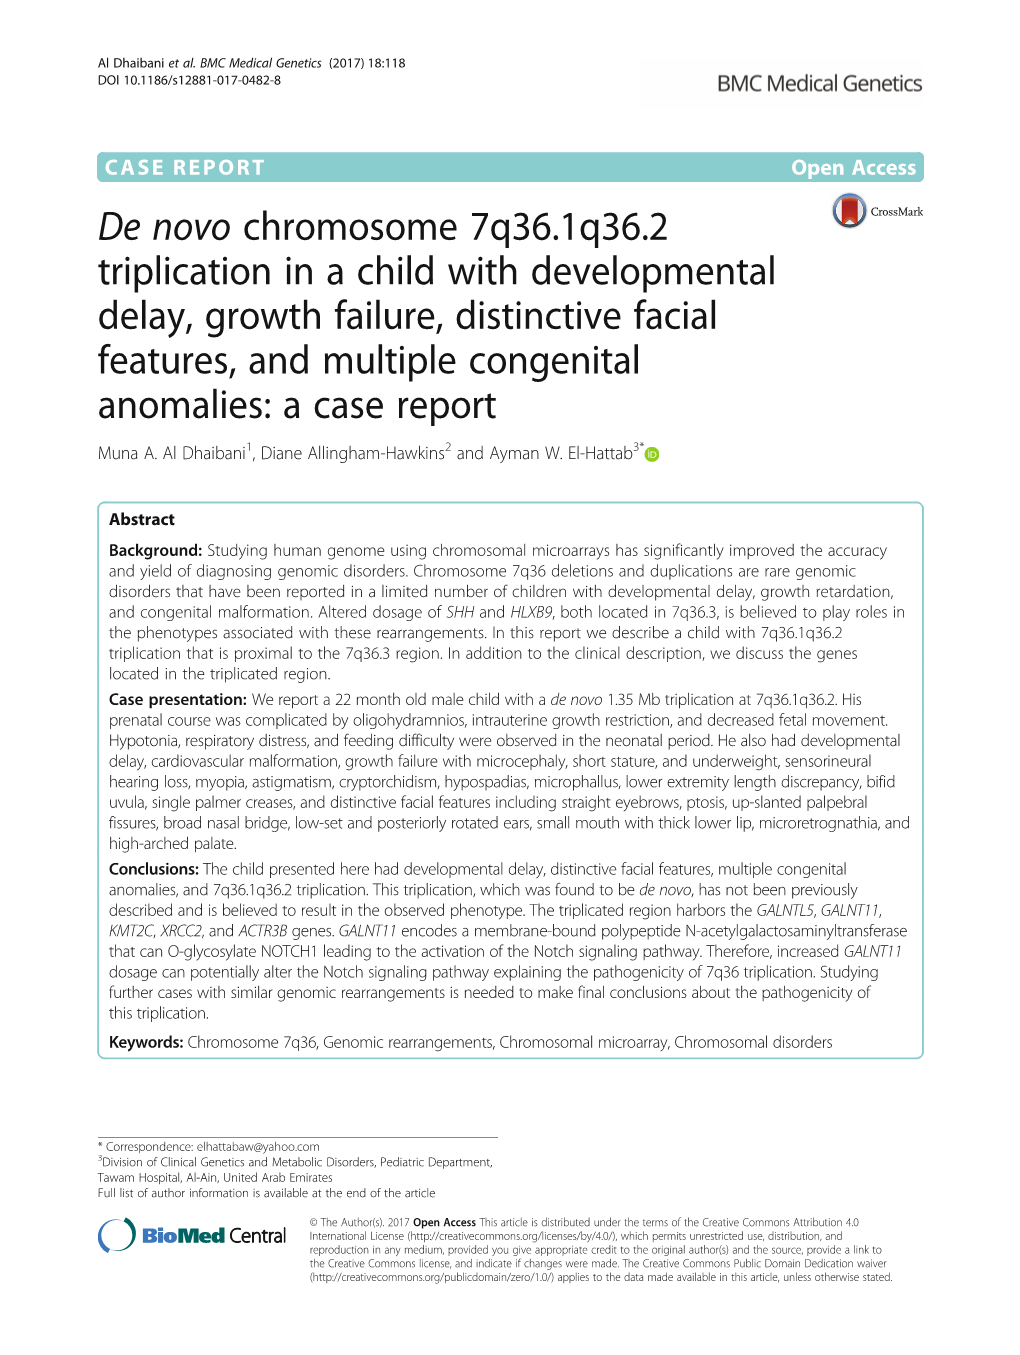 De Novo Chromosome 7Q36.1Q36.2 Triplication in a Child With